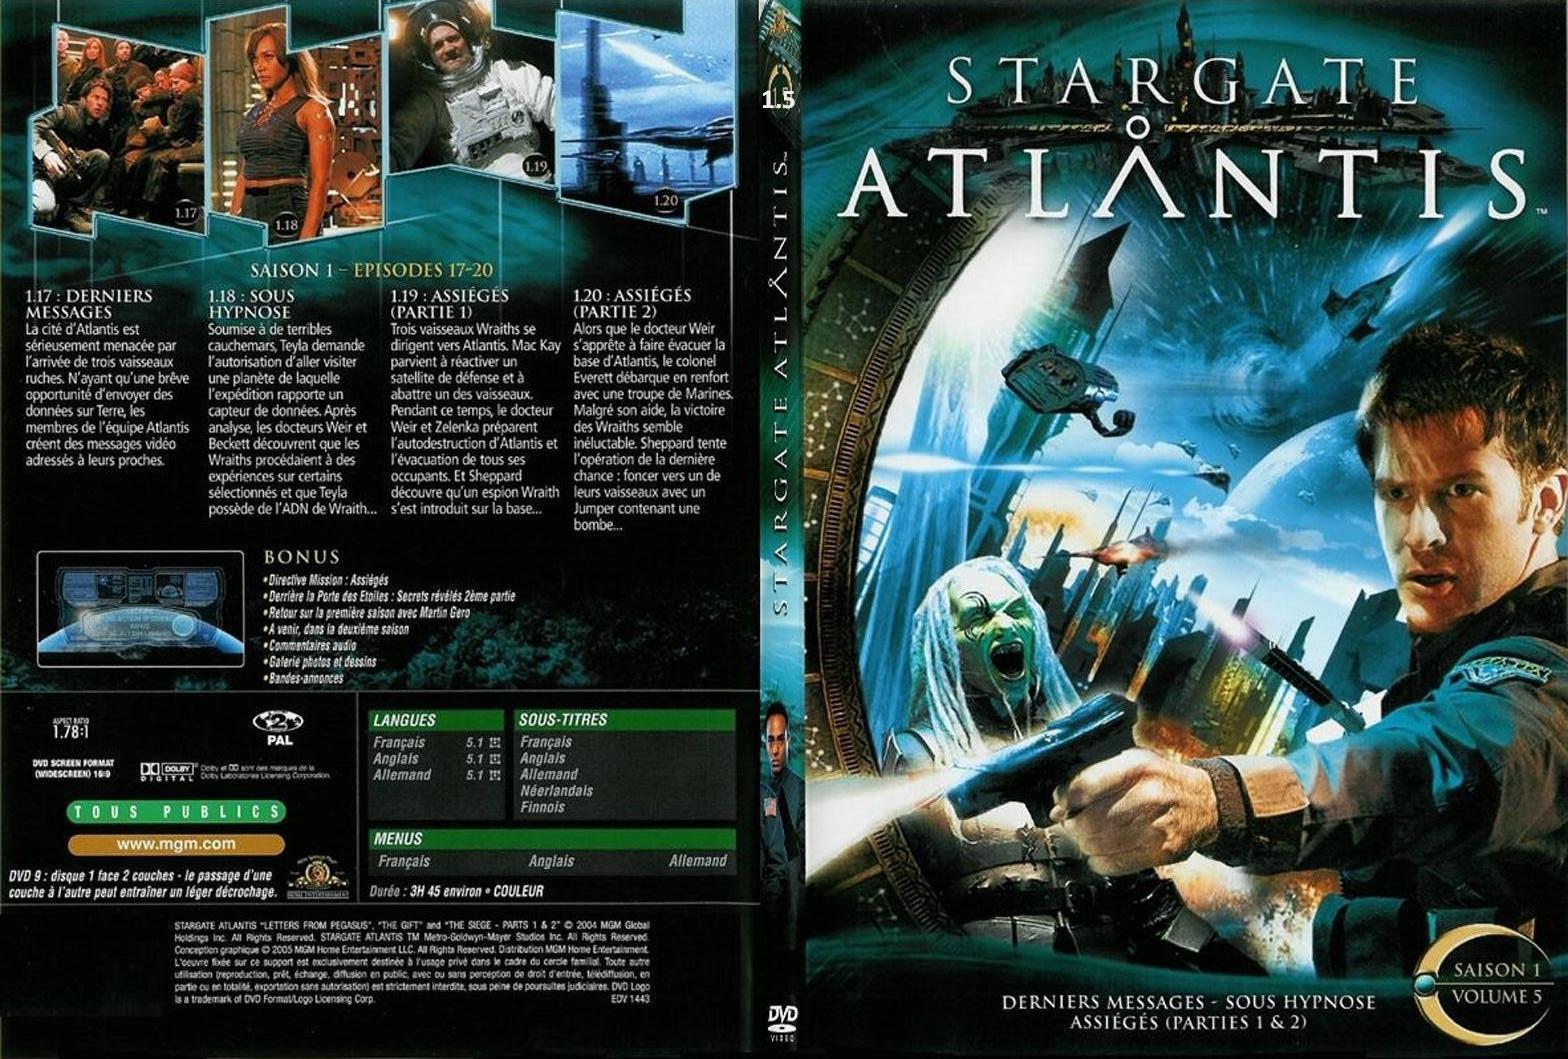 Jaquette DVD Stargate Atlantis saison 1 vol 5 - SLIM